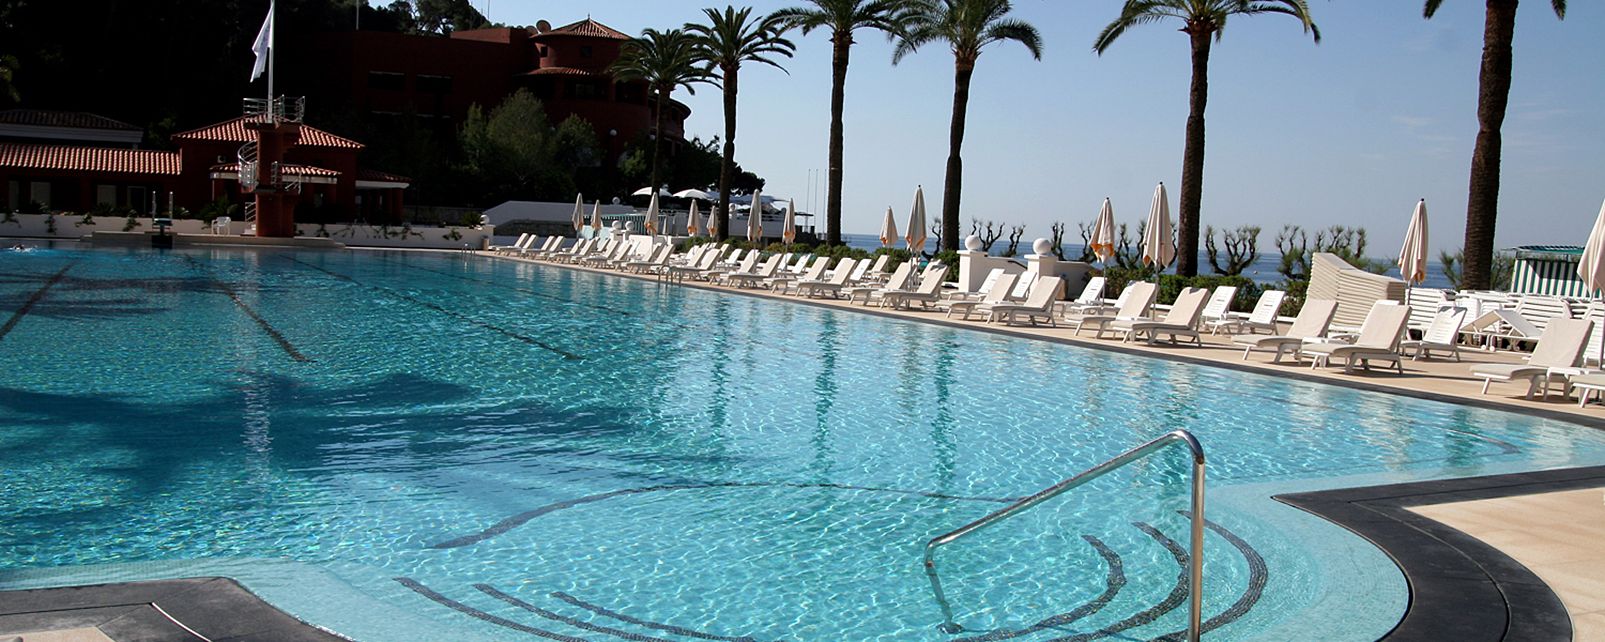 Hotel Monte Carlo Beach